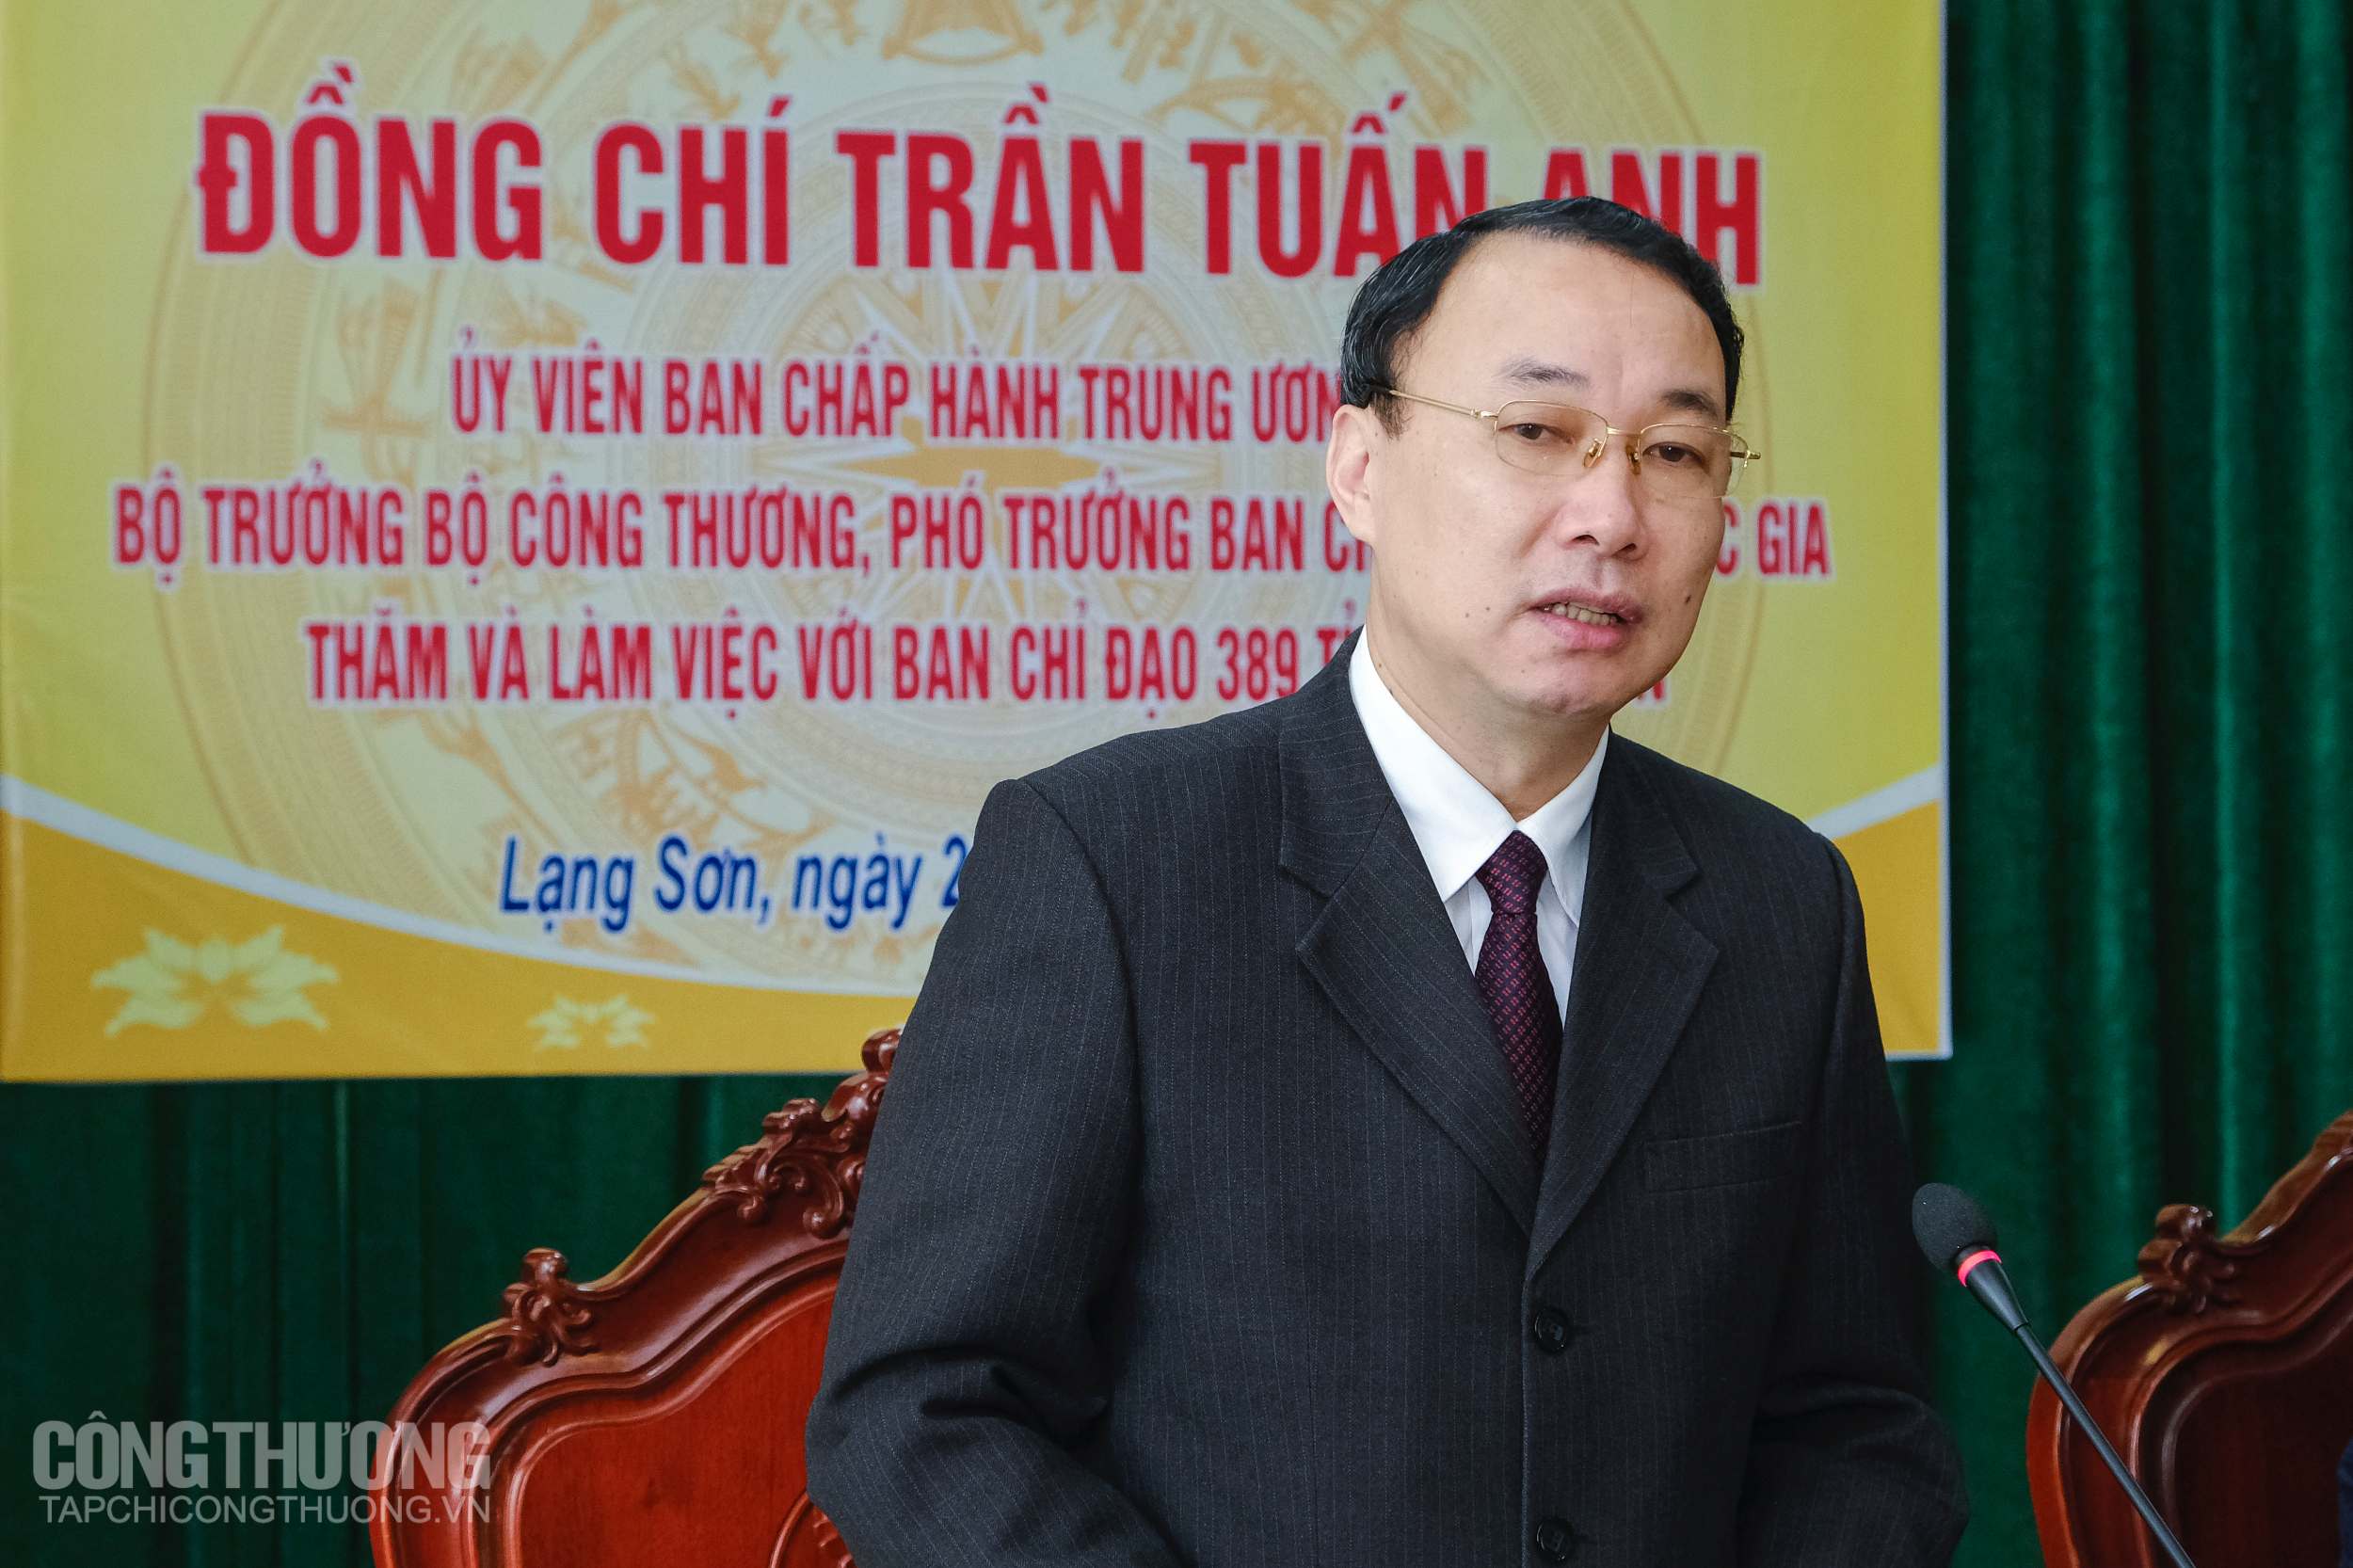 Ông Nguyễn Công Trưởng - Phó Chủ tịch UBND tỉnh, Trưởng Ban chỉ đạo 389 Lạng Sơn